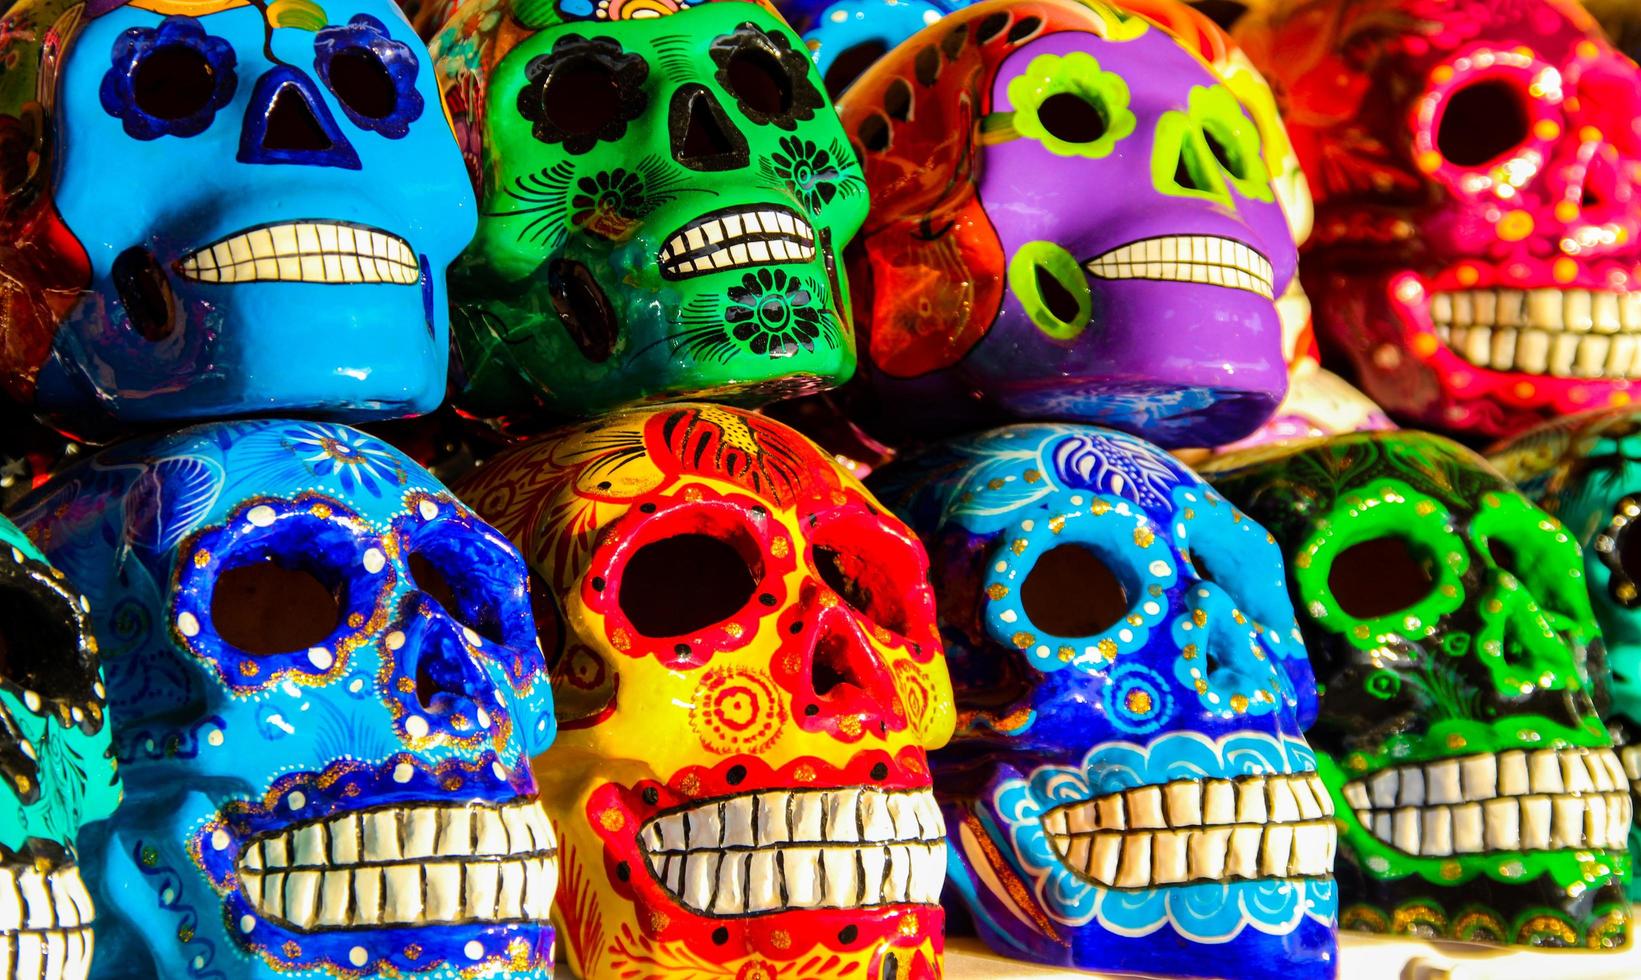 cabo san lucas, mexico, 8 augustus 2014 - calacas, houten schedel dag van de dode maskers op de markt in cabo san lucas, mexico. maskers zijn typische symbolen die Calacas vertegenwoordigen - skeletten. foto